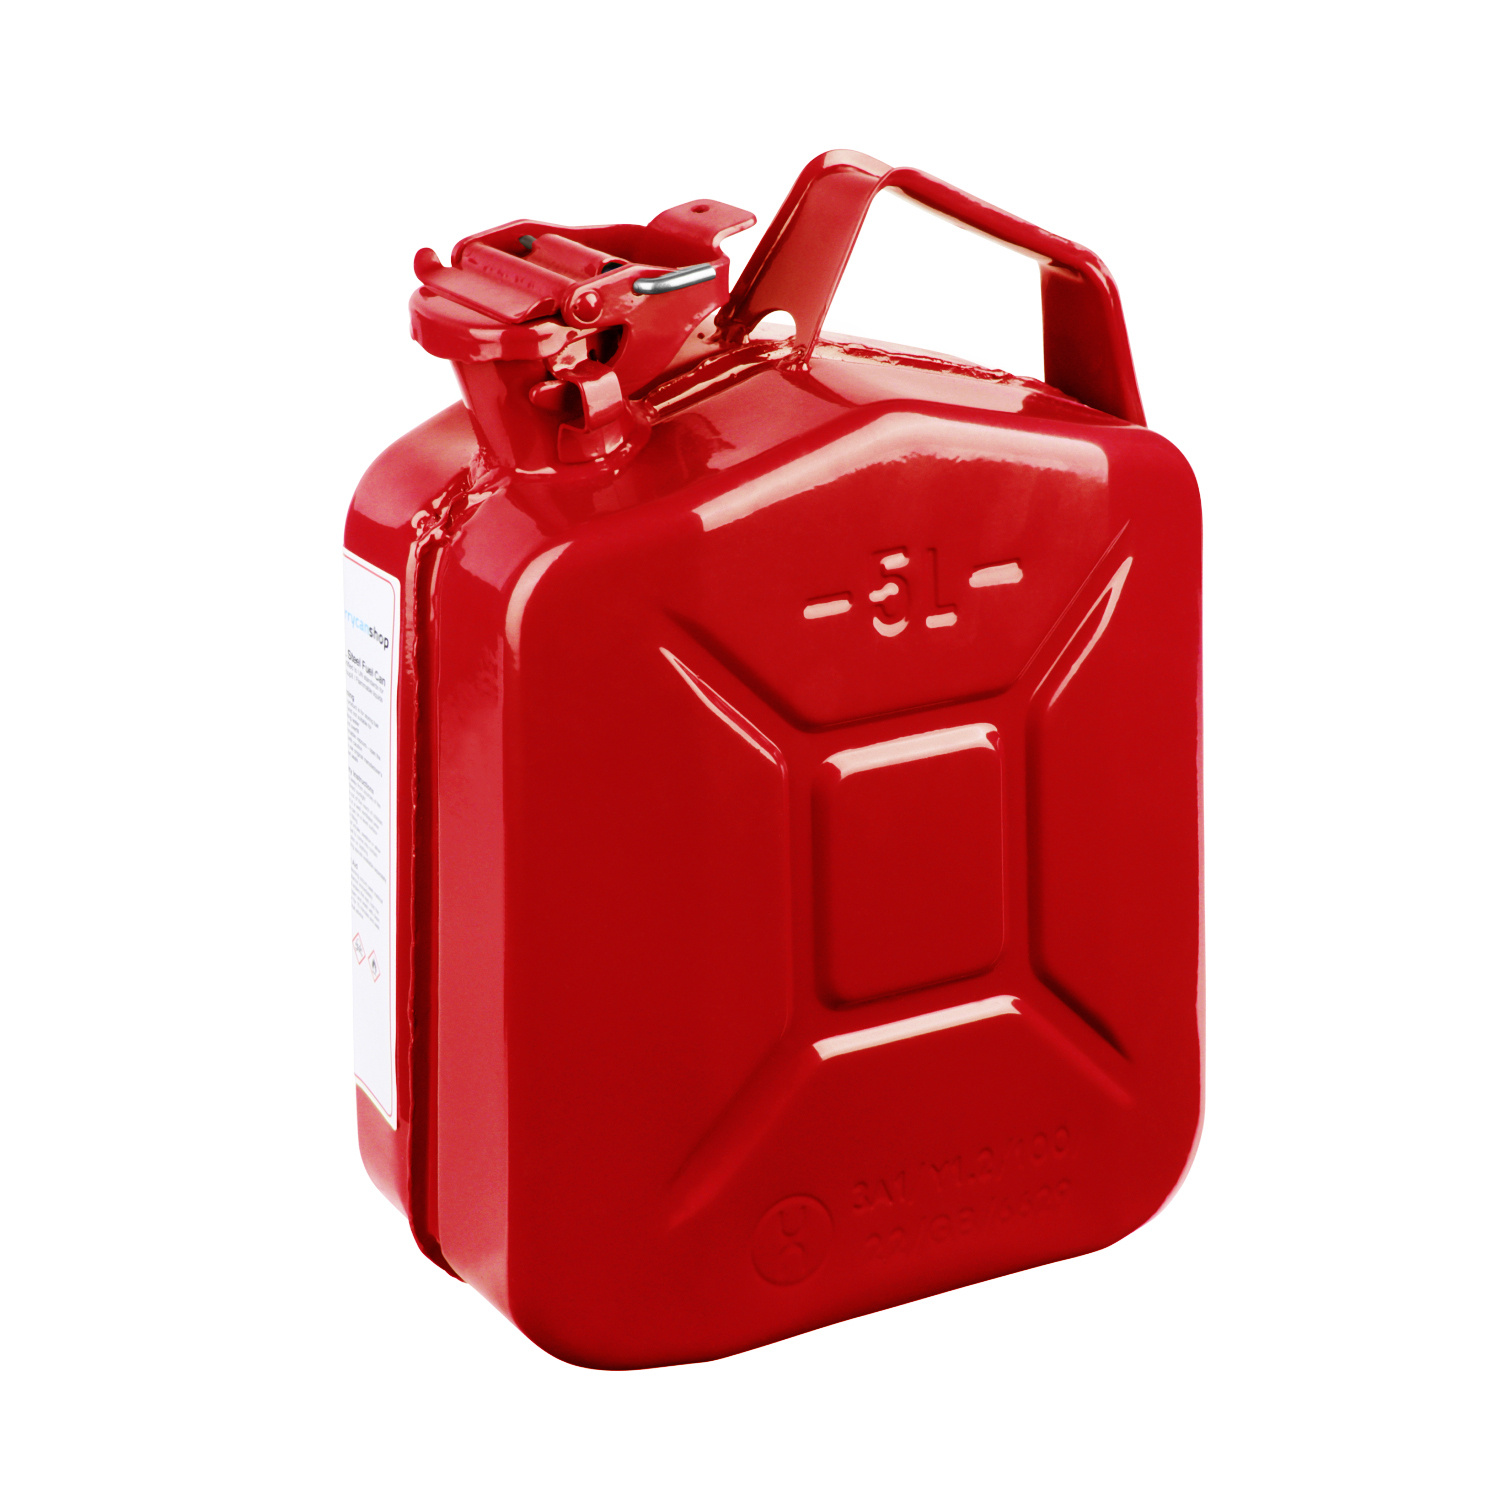 10 Liter Metall Kanister für Benzin & Diesel - Rot 